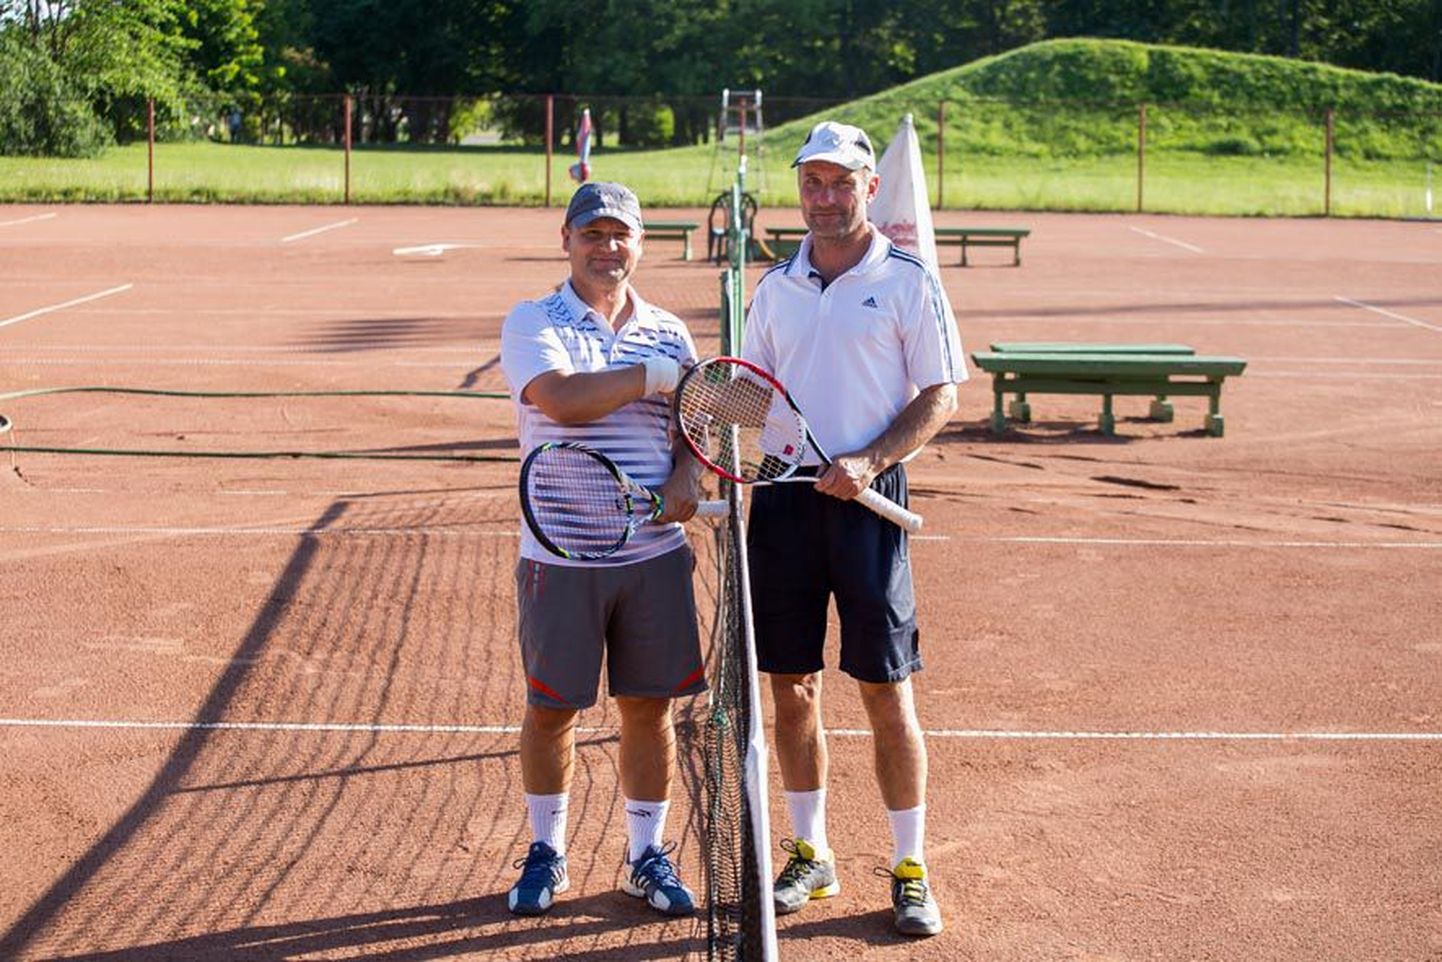 Paidelane Maidu Luts (vasakul) hakkas tennist toksima umbes kuus aastat tagasi. Tennisepisiku süstis temasse sõber Raul Mironov jalgpalliplatsilt, kui kinkis talle 40. sünnipäevaks reketi. Varem mängisid mehed ühes meeskonnas jalgpalli, nüüd ühel platsil tennist ja seda nii kaua, kuni jalad veel liiguvad.